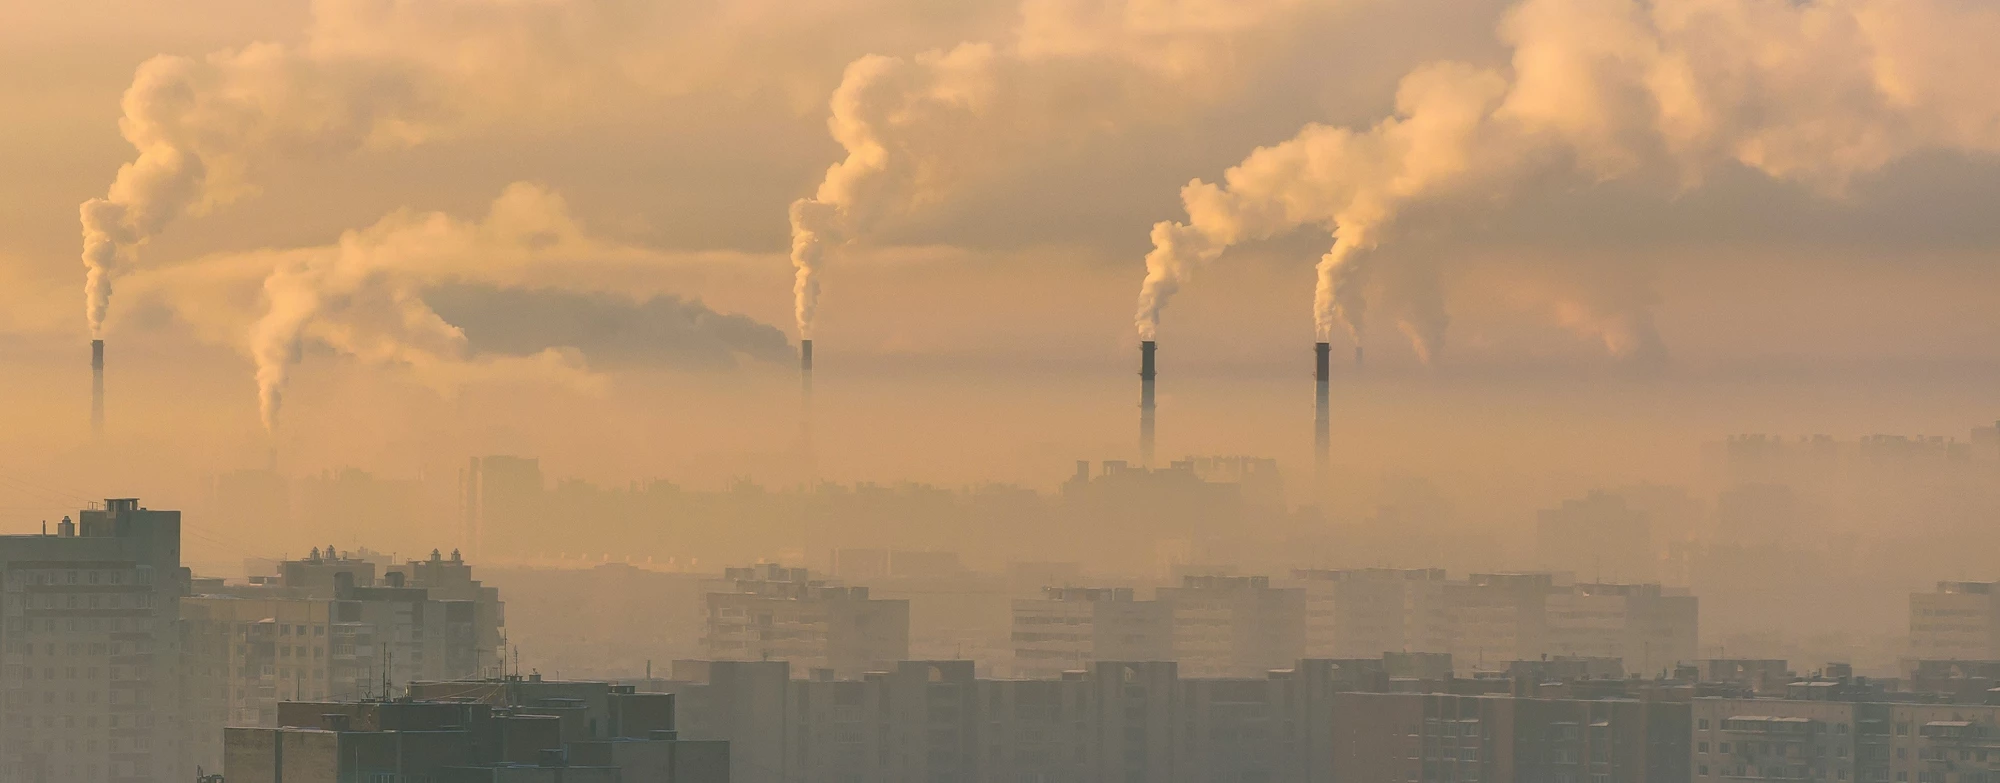 Un paysage urbain à l'atmosphère polluée. Photo : © aapsky/Shutterstock